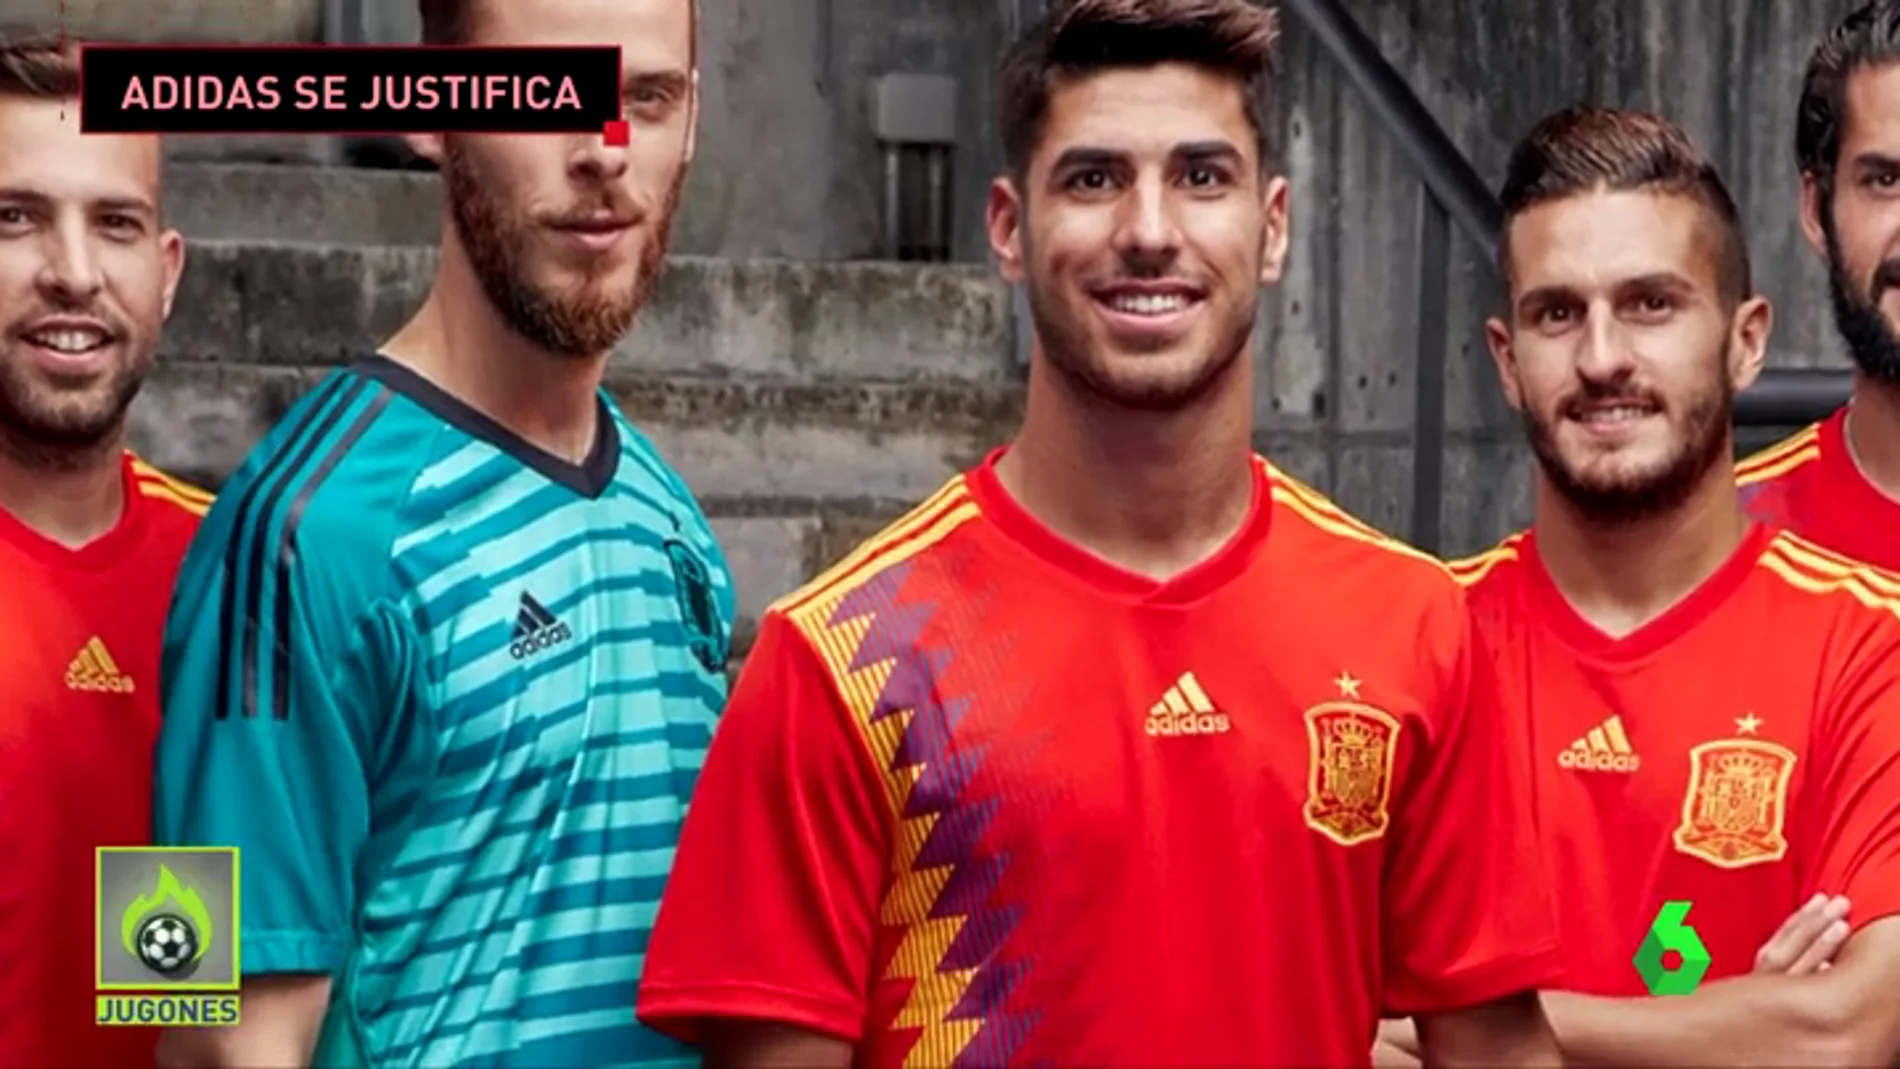 Adidas responde a la polémica la nueva camiseta de la selección española